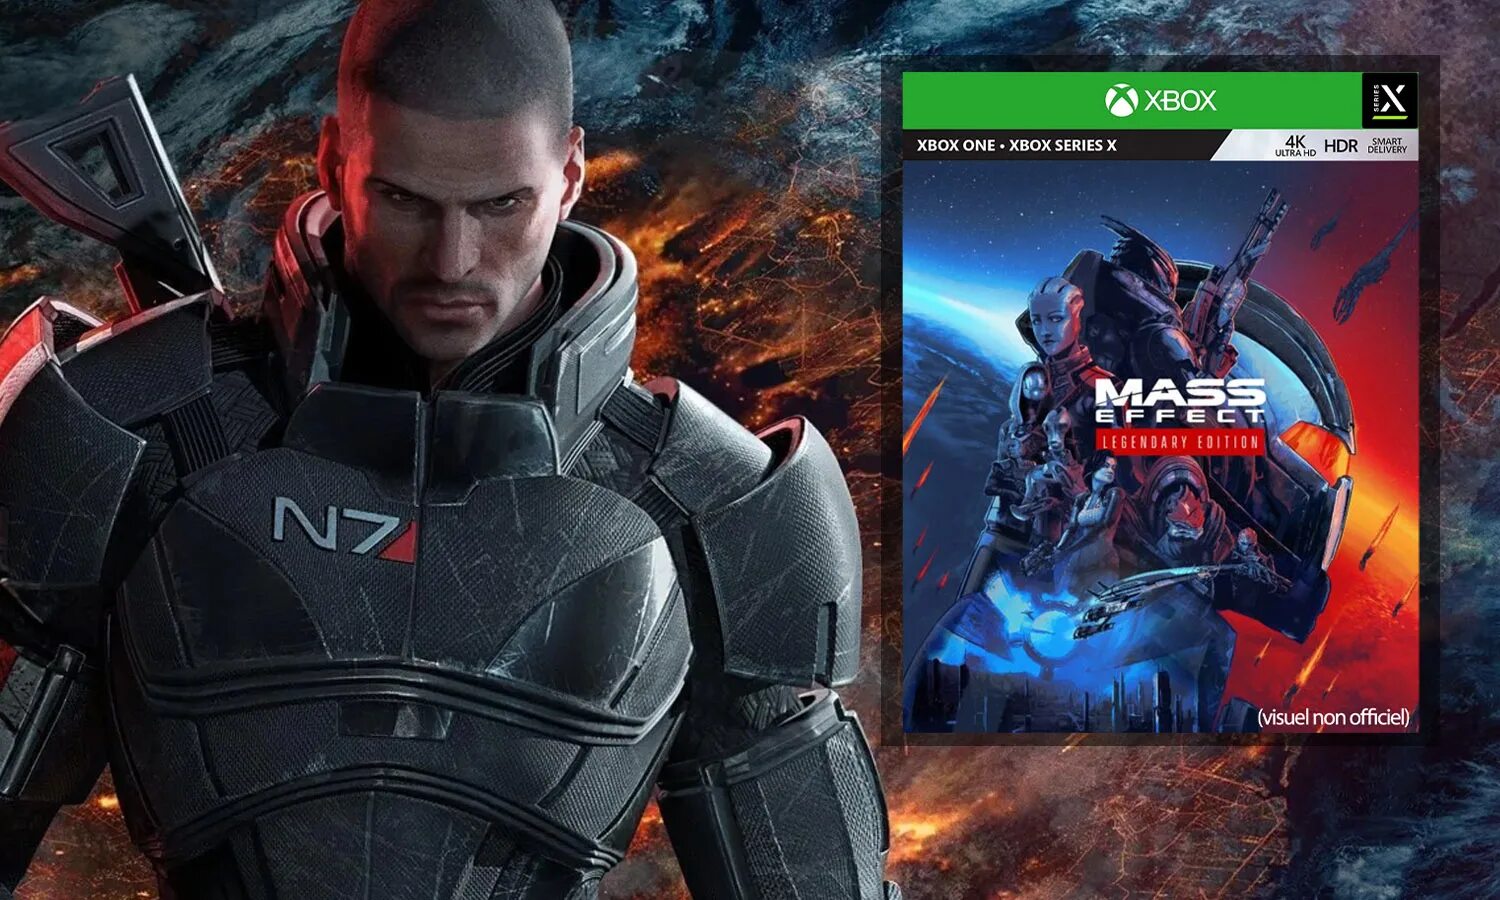 Mass Effect Legendary Edition ps4. Mass Effect Legendary Edition Xbox one. Mass Effect 1 пс4. Масс эффкет легендари ждишн ПС 4. Легендарные действия